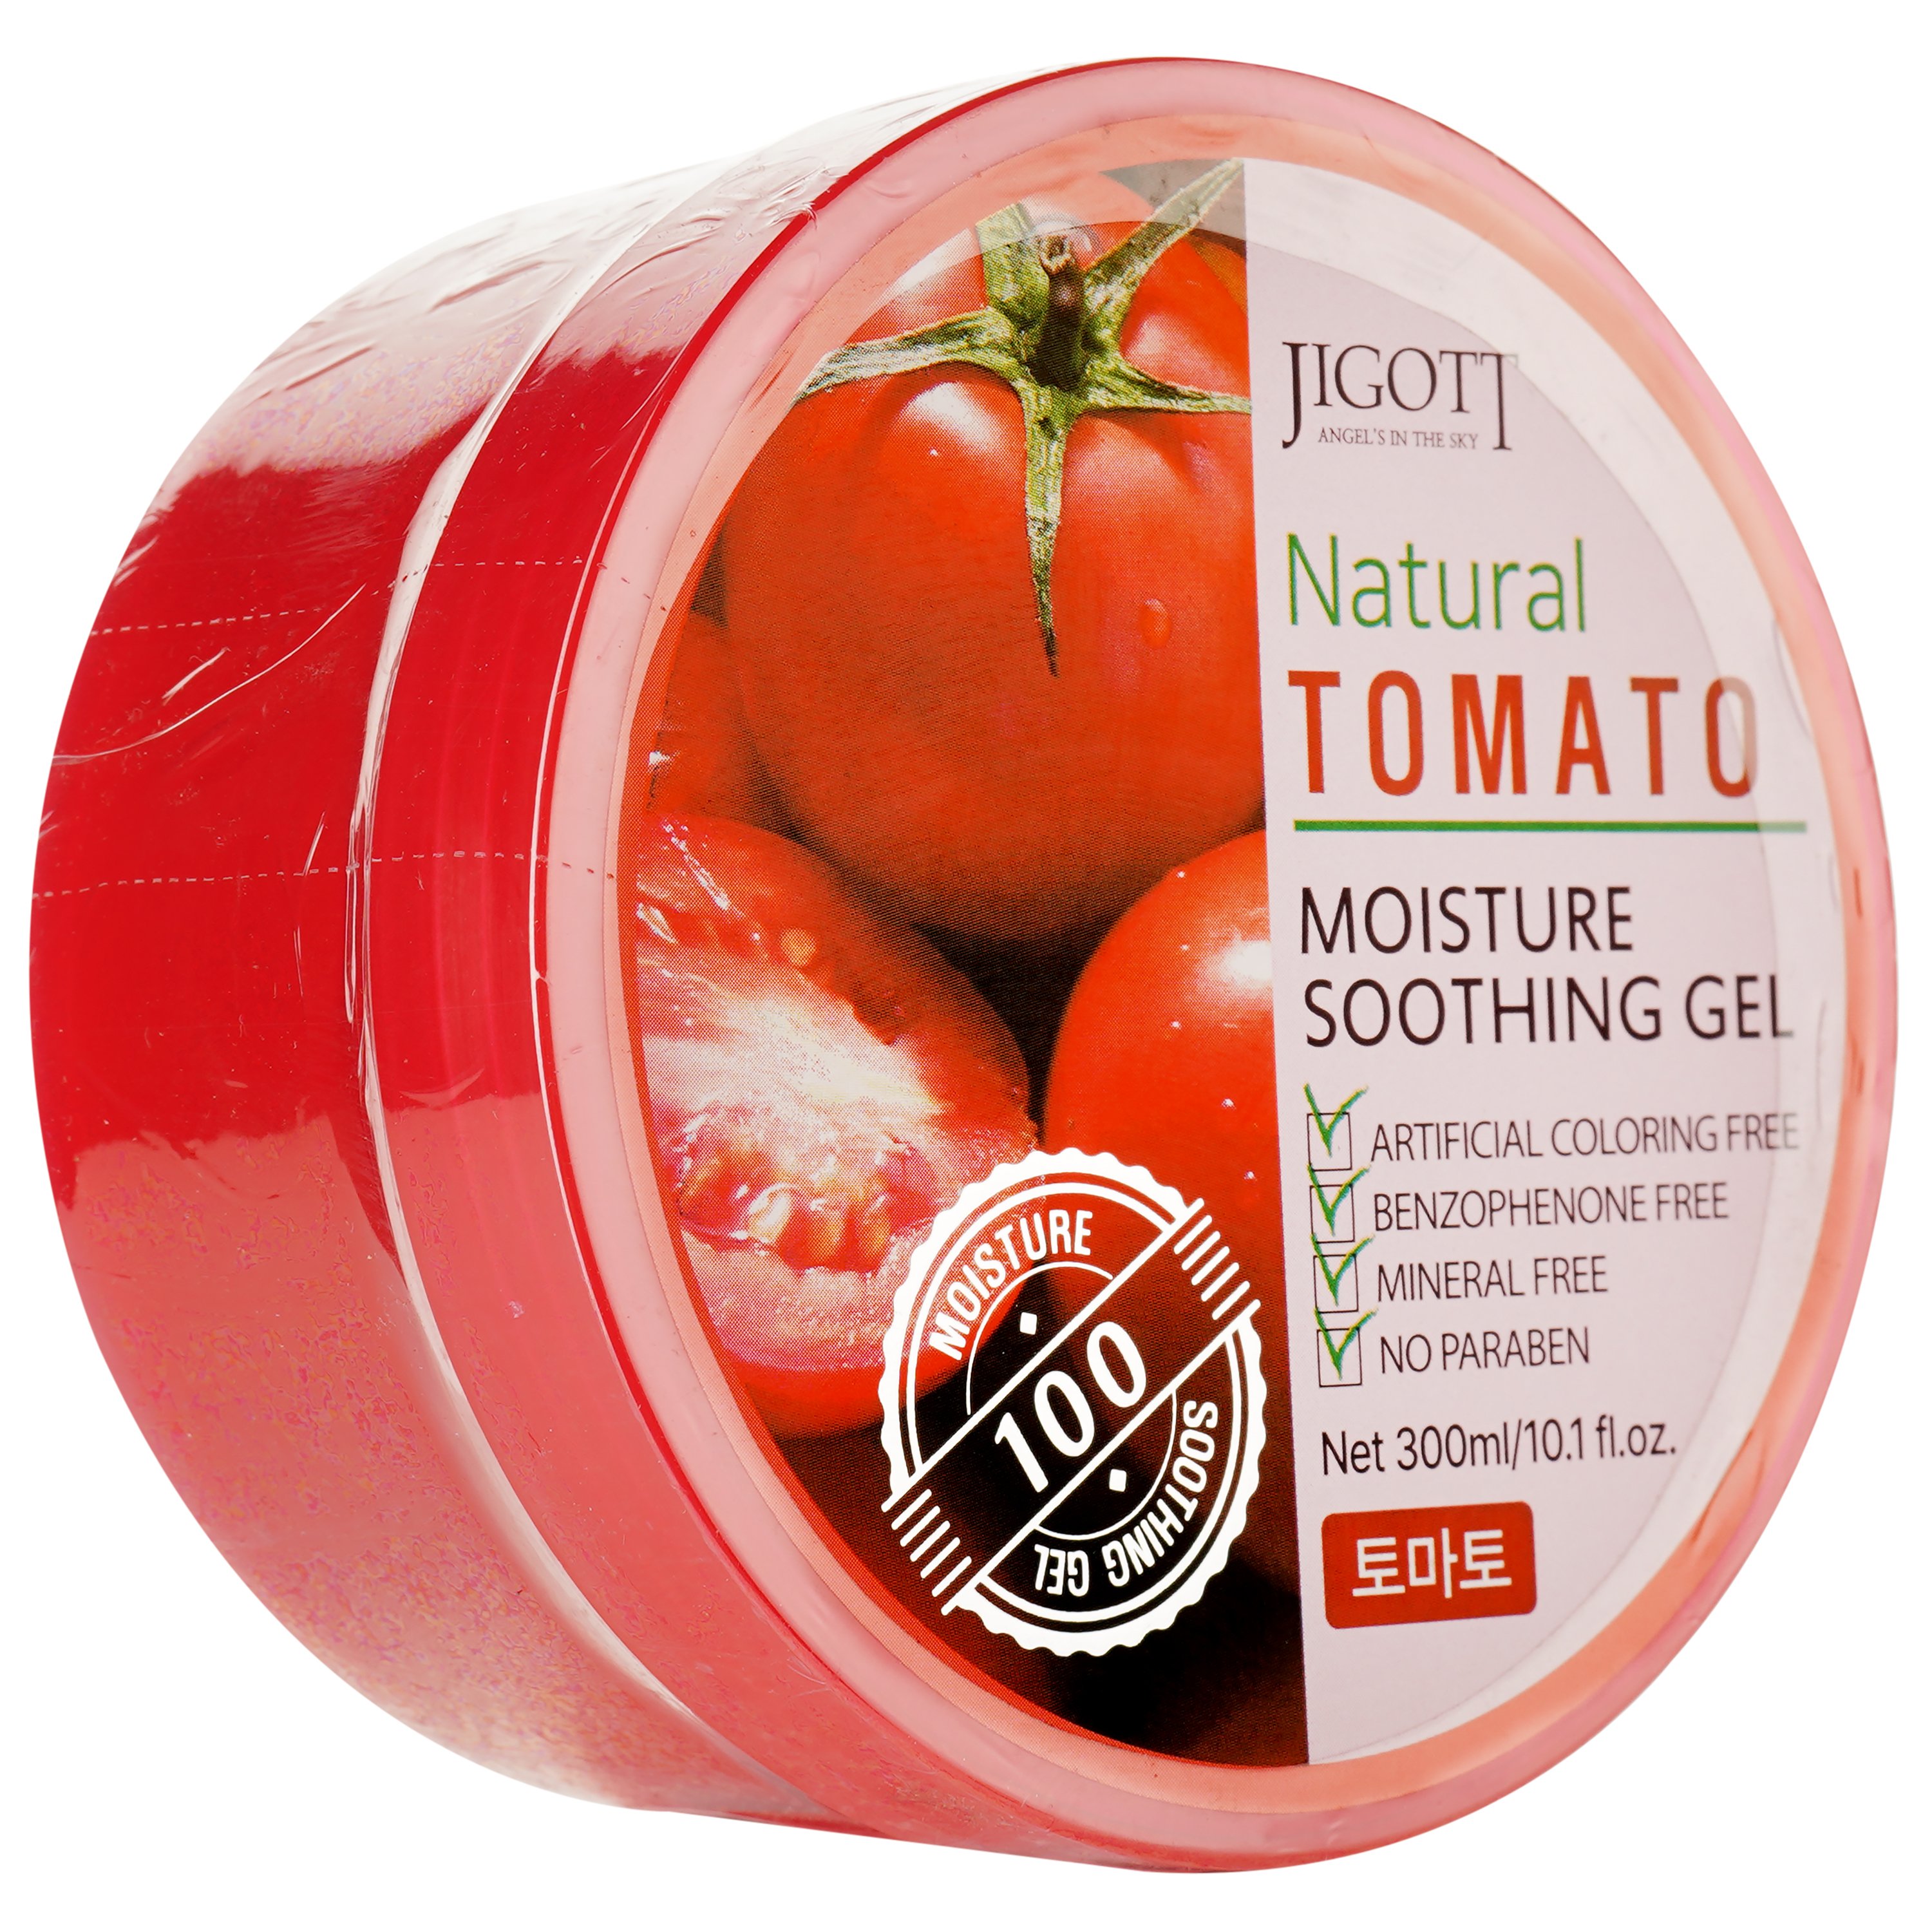 Зволожуючий гель для обличчя Jigott Natural Tomato Moisture Soothing Gel з екстрактом томату, 300 мл - фото 2